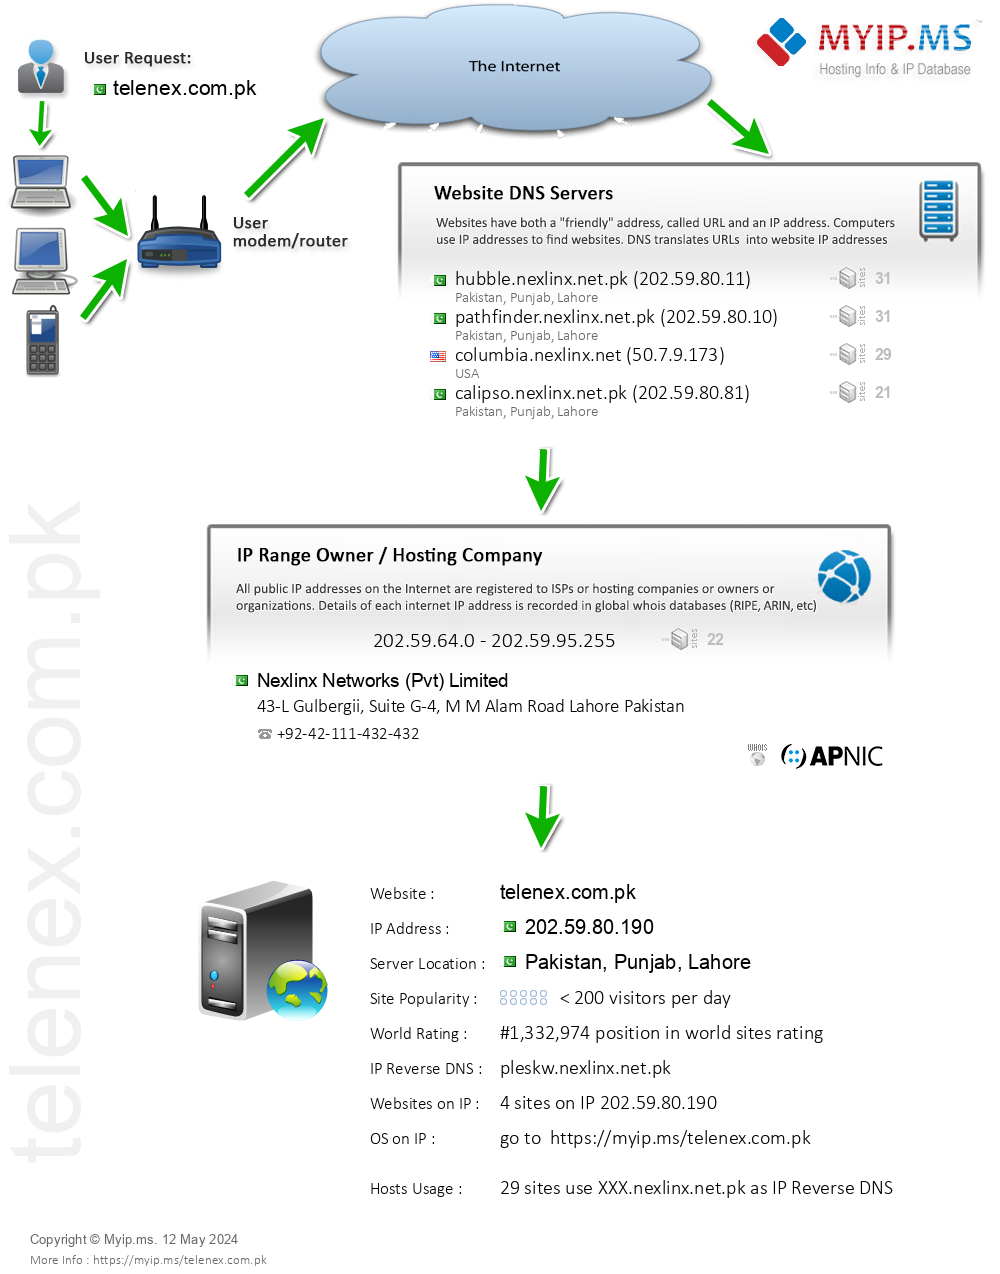 Telenex.com.pk - Website Hosting Visual IP Diagram